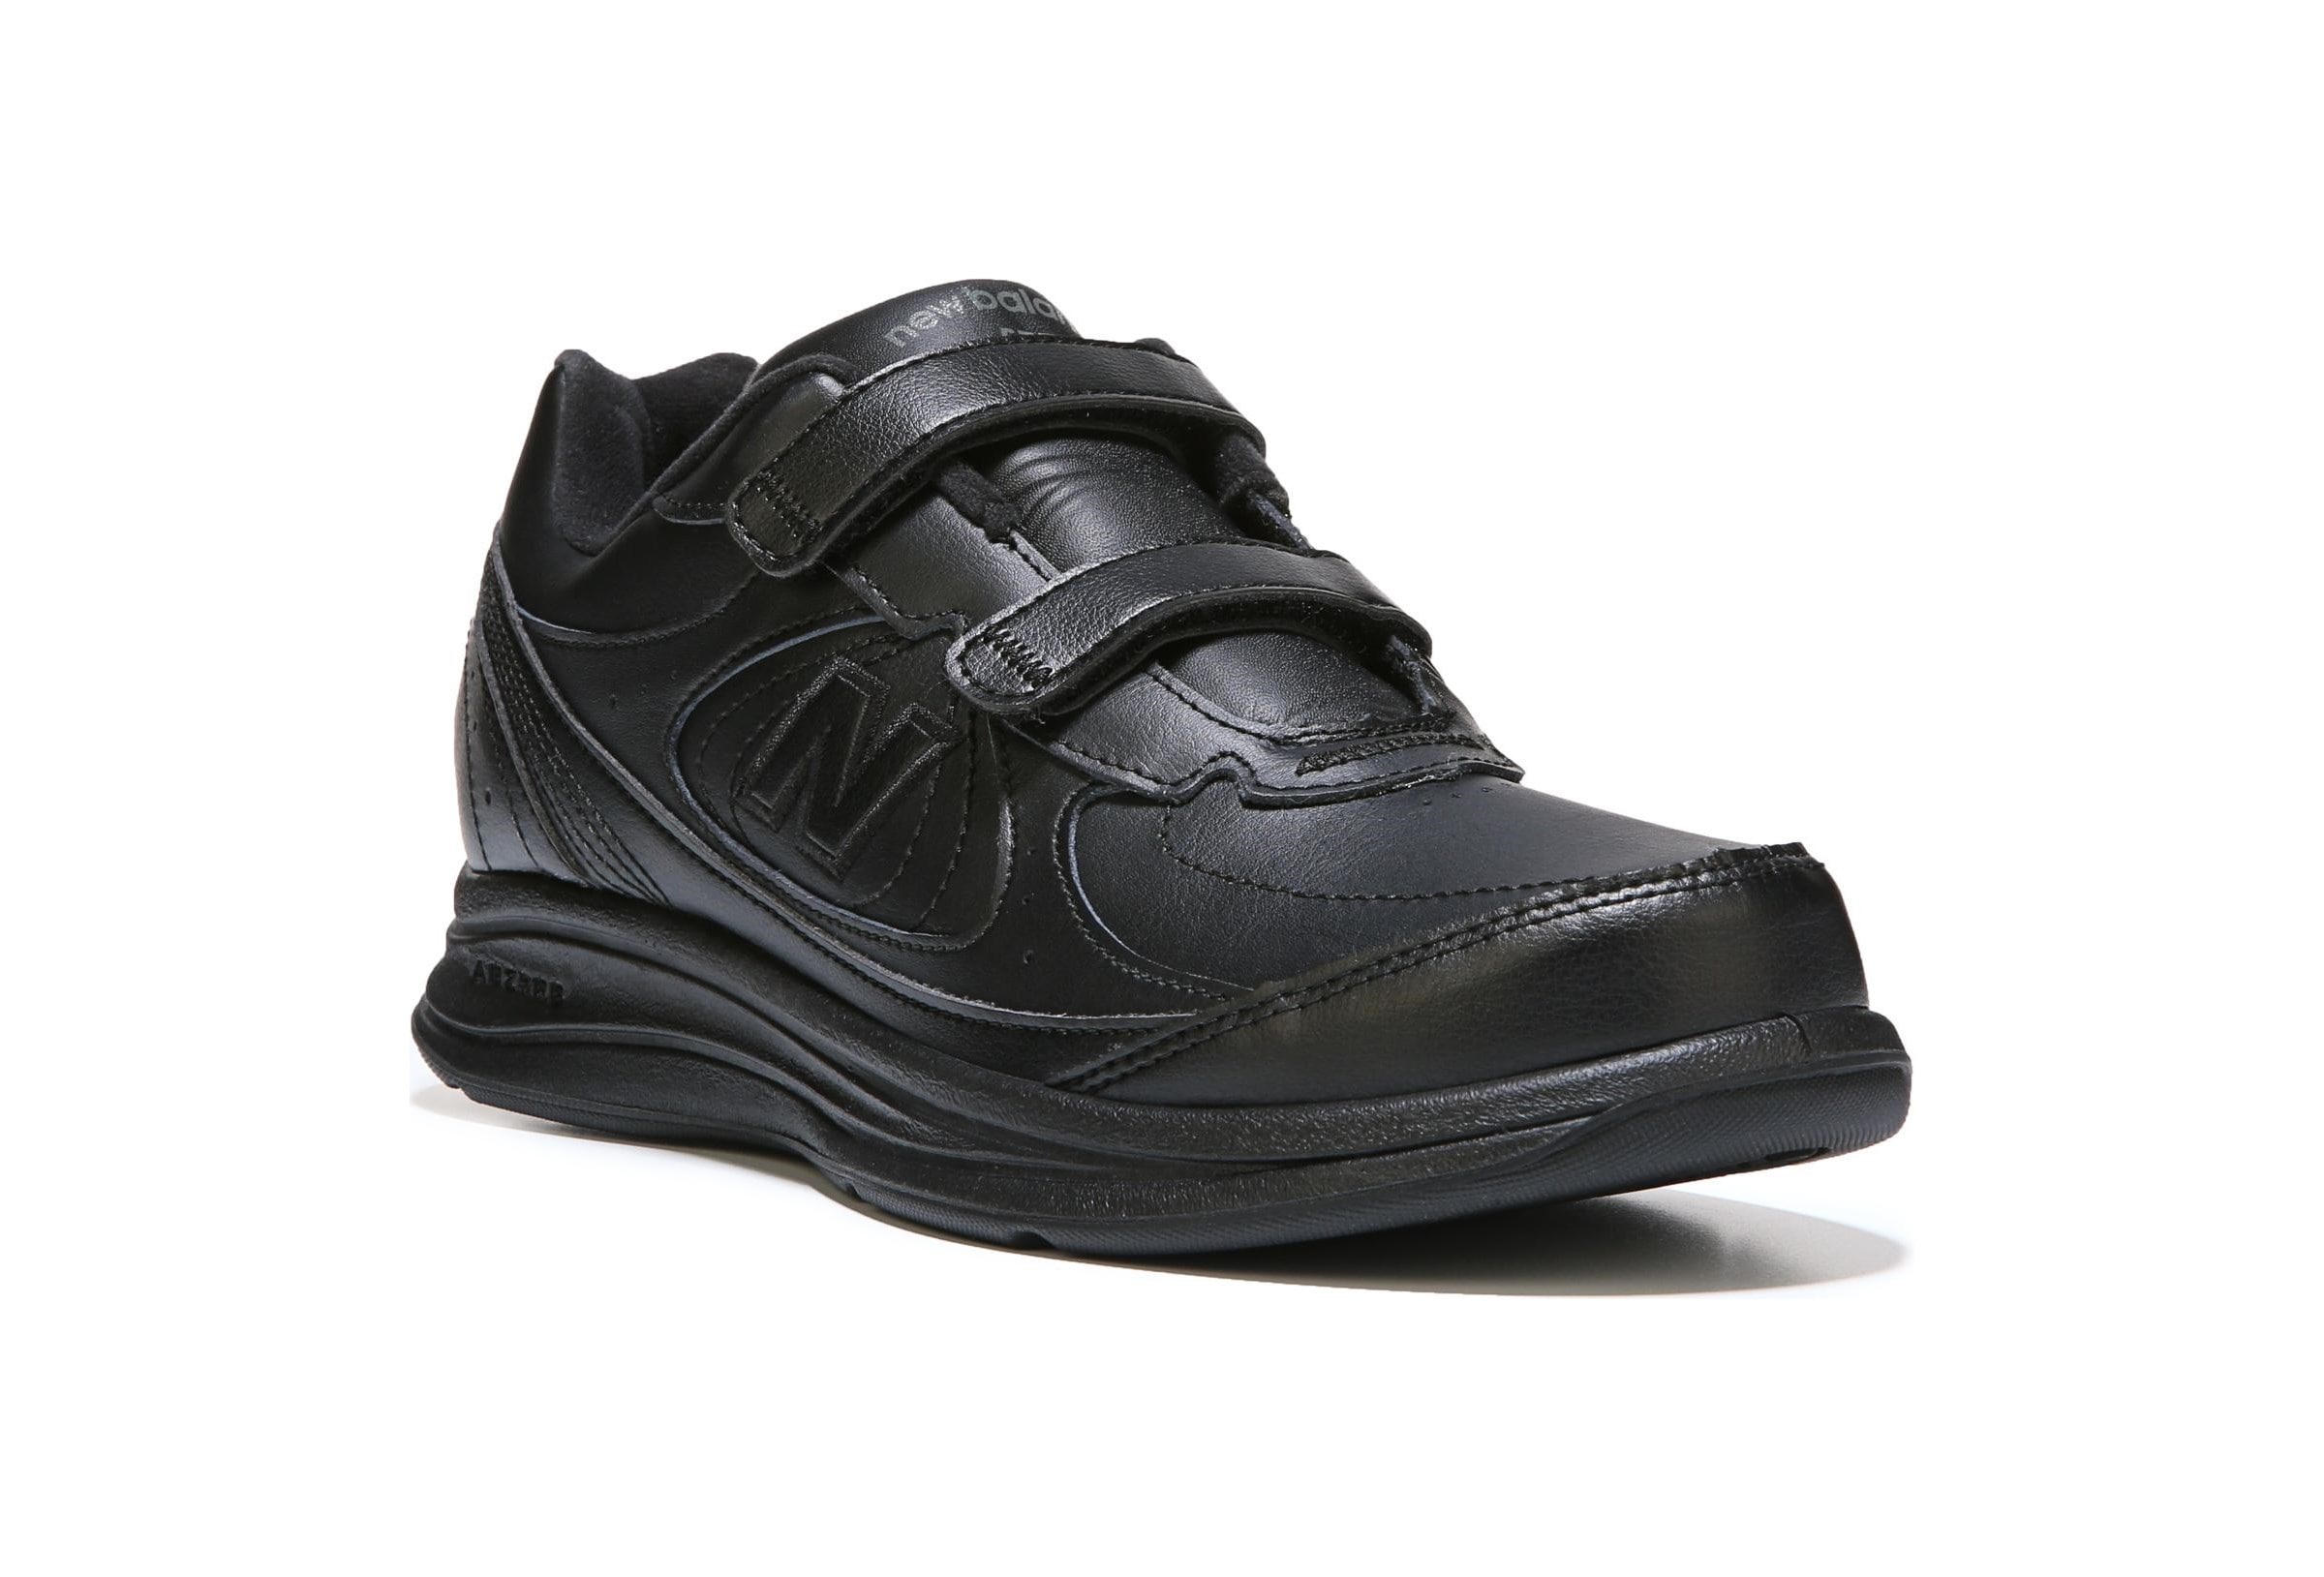 New Balance Women's 577 Narrow/Medium/Wide Walking Shoe | Famous Footwear